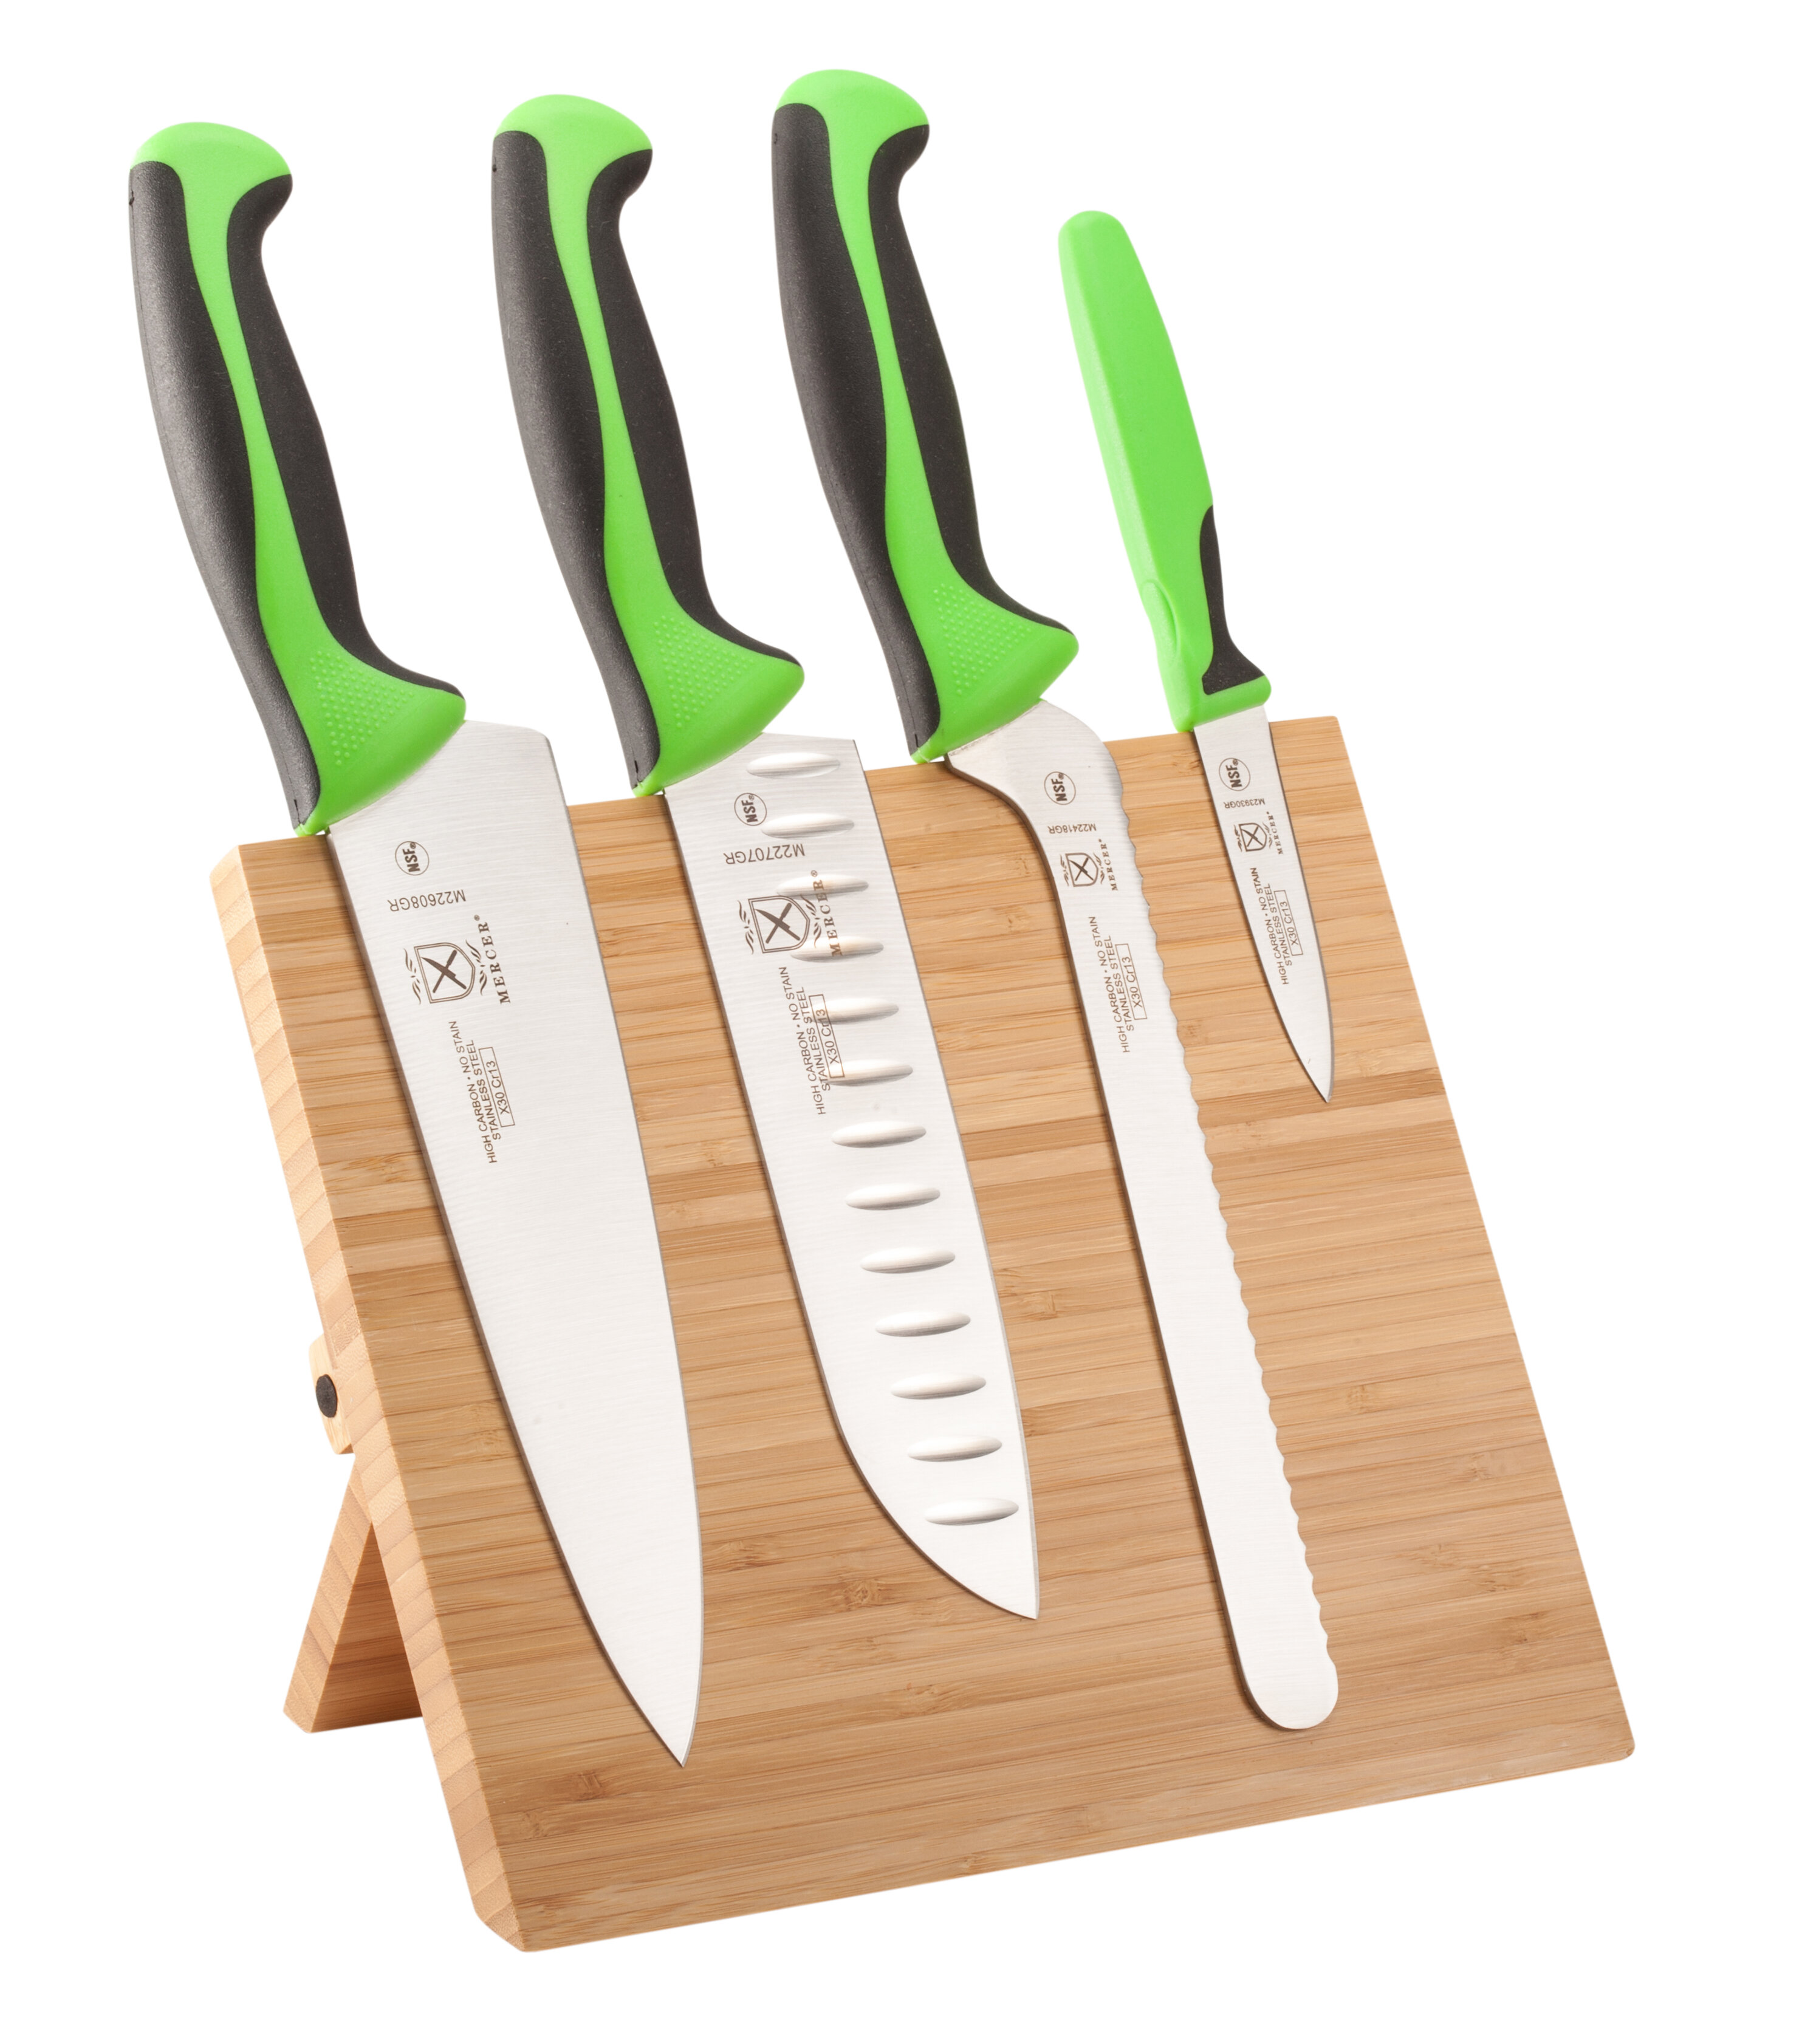 https://assets.wfcdn.com/im/59895390/compr-r85/2982/29828351/mercer-cutlery-millennia-5-piece-high-carbon-stainless-steel-knife-block-set.jpg